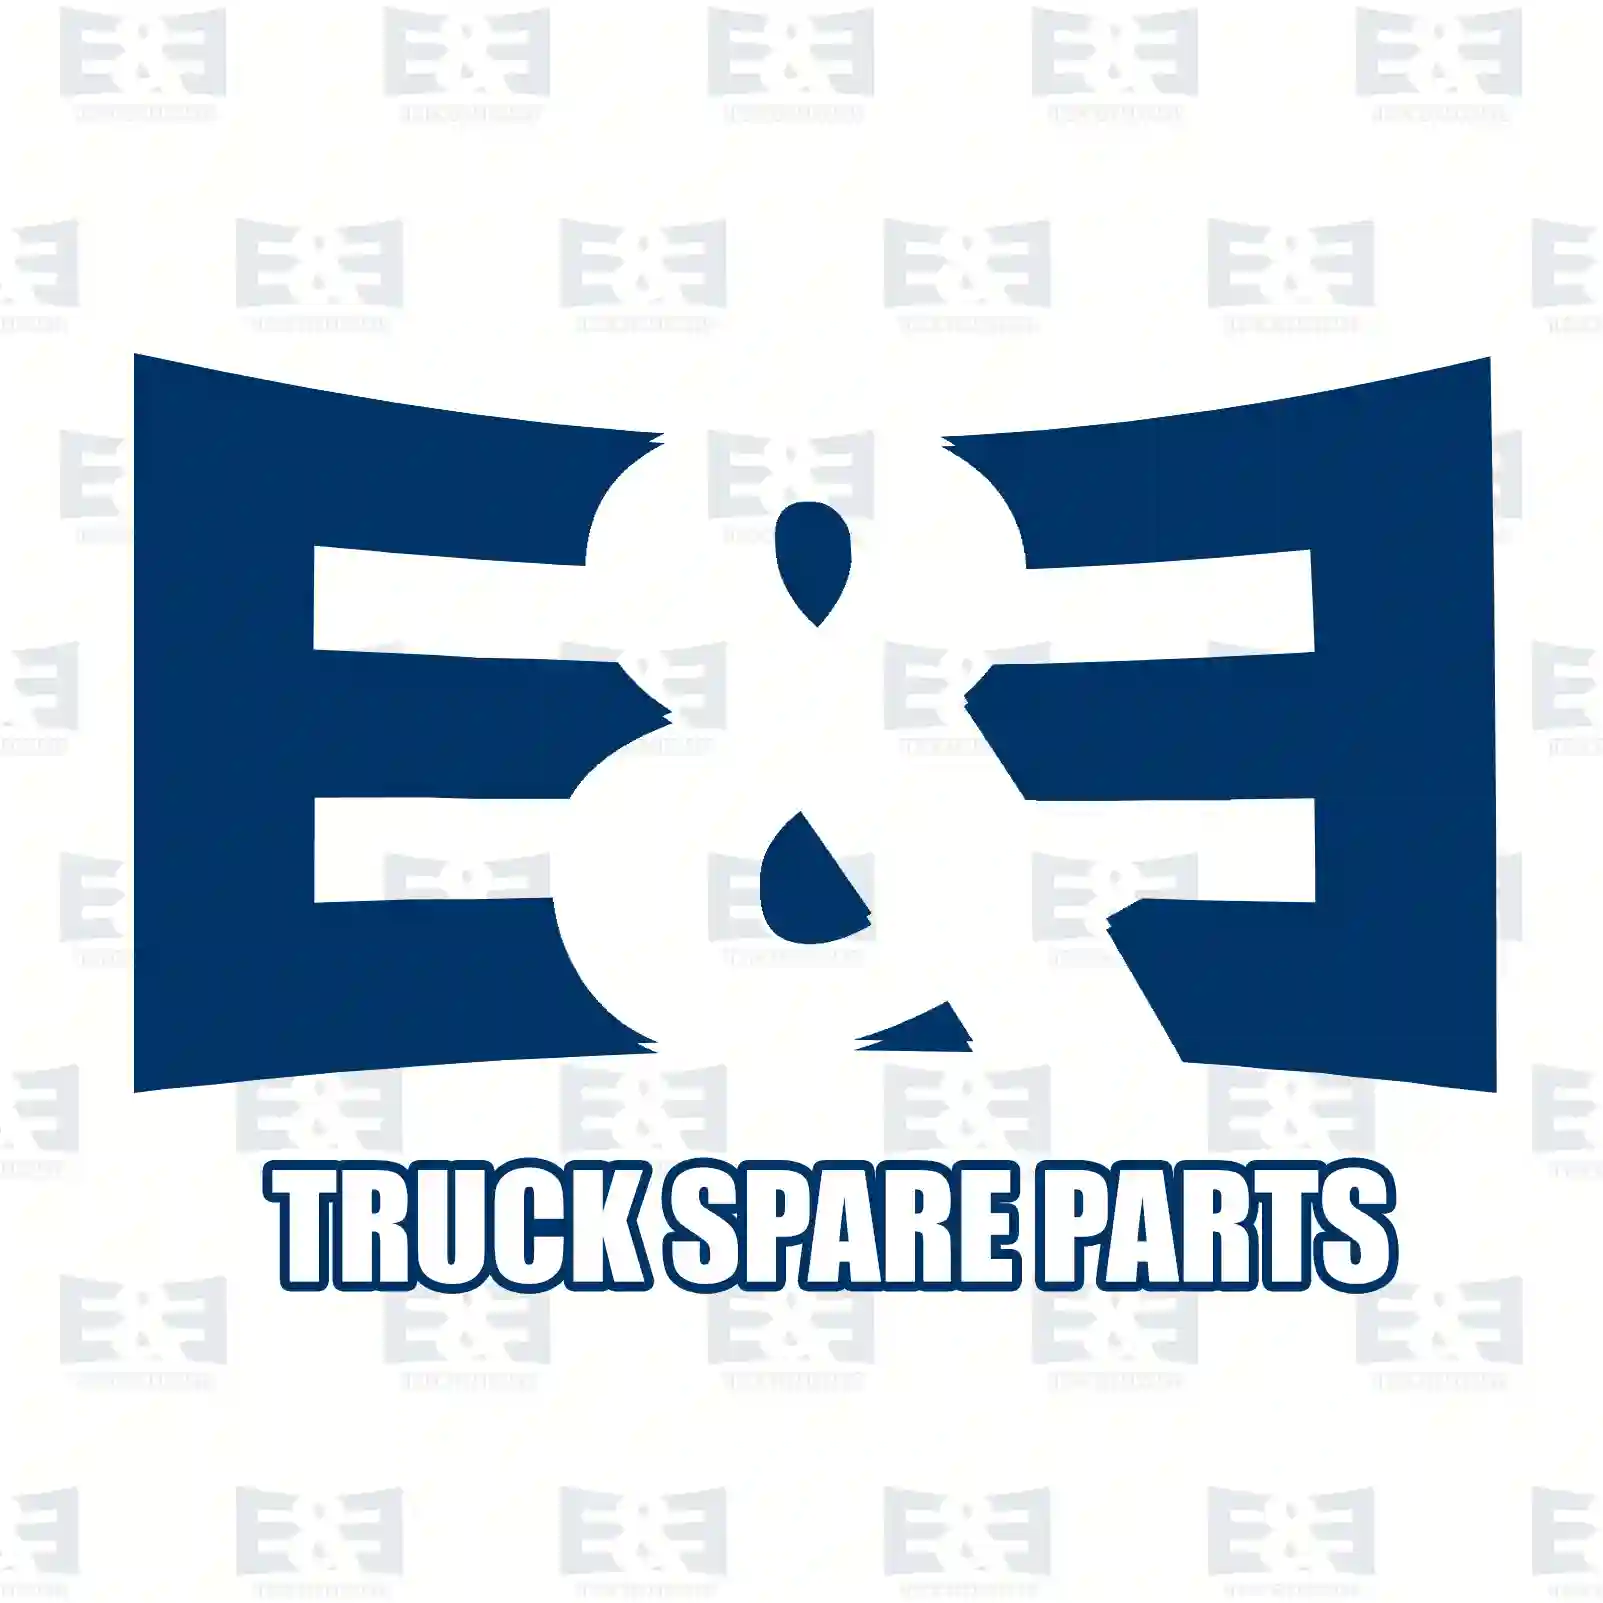 Shock absorber, 2E2283749, 81437016841, 85437016003, , , ||  2E2283749 E&E Truck Spare Parts | Truck Spare Parts, Auotomotive Spare Parts Shock absorber, 2E2283749, 81437016841, 85437016003, , , ||  2E2283749 E&E Truck Spare Parts | Truck Spare Parts, Auotomotive Spare Parts